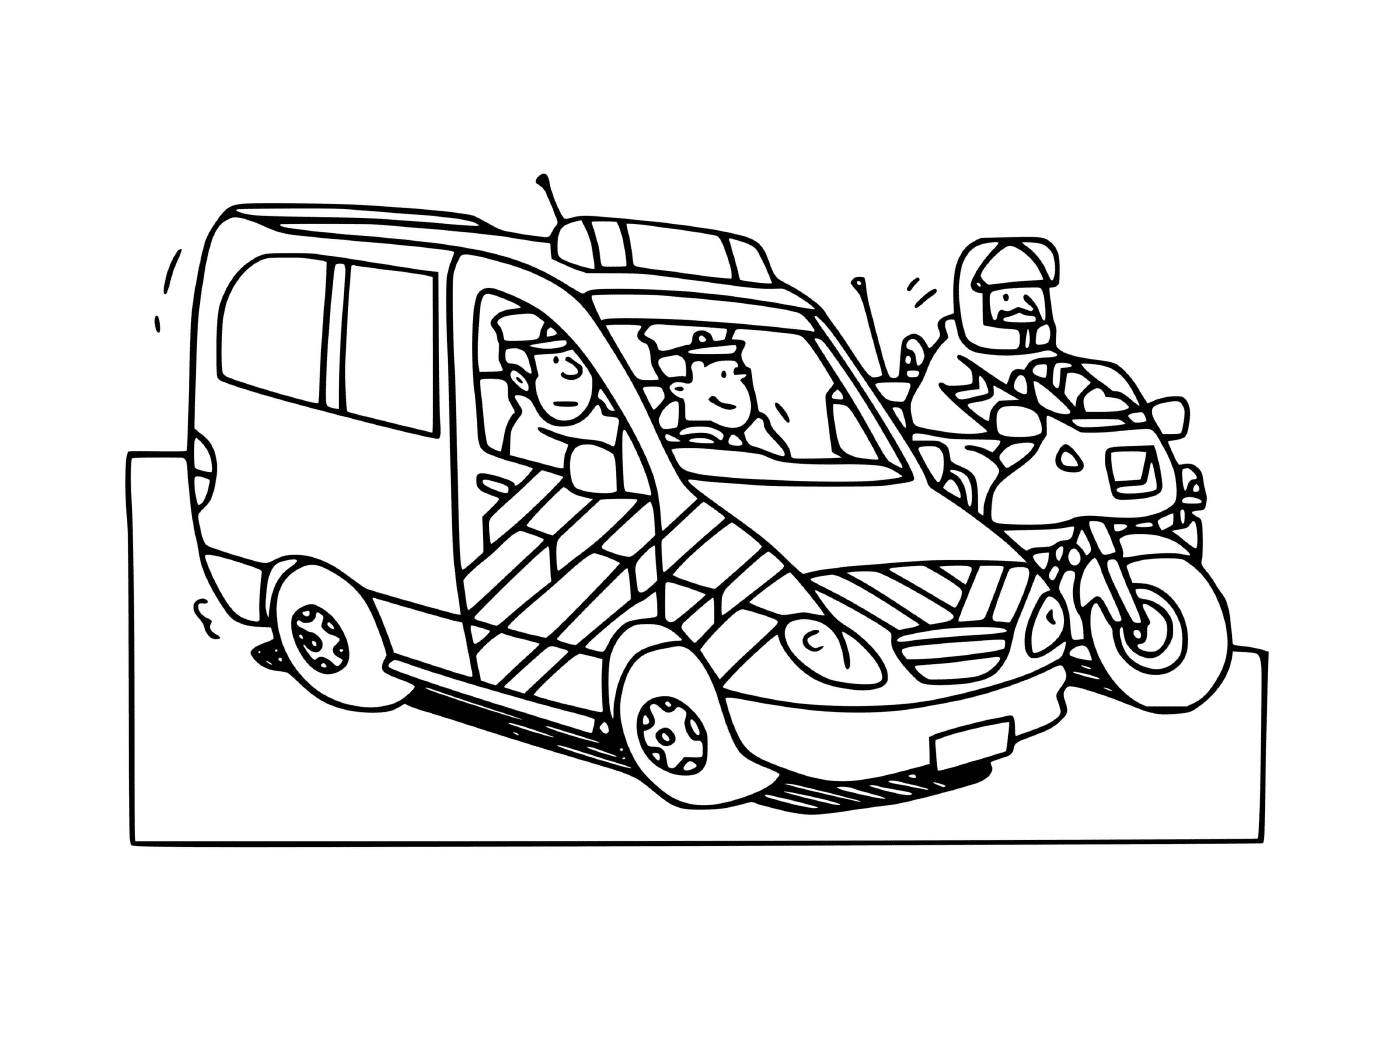  Carro da polícia da França com motocicleta da polícia 